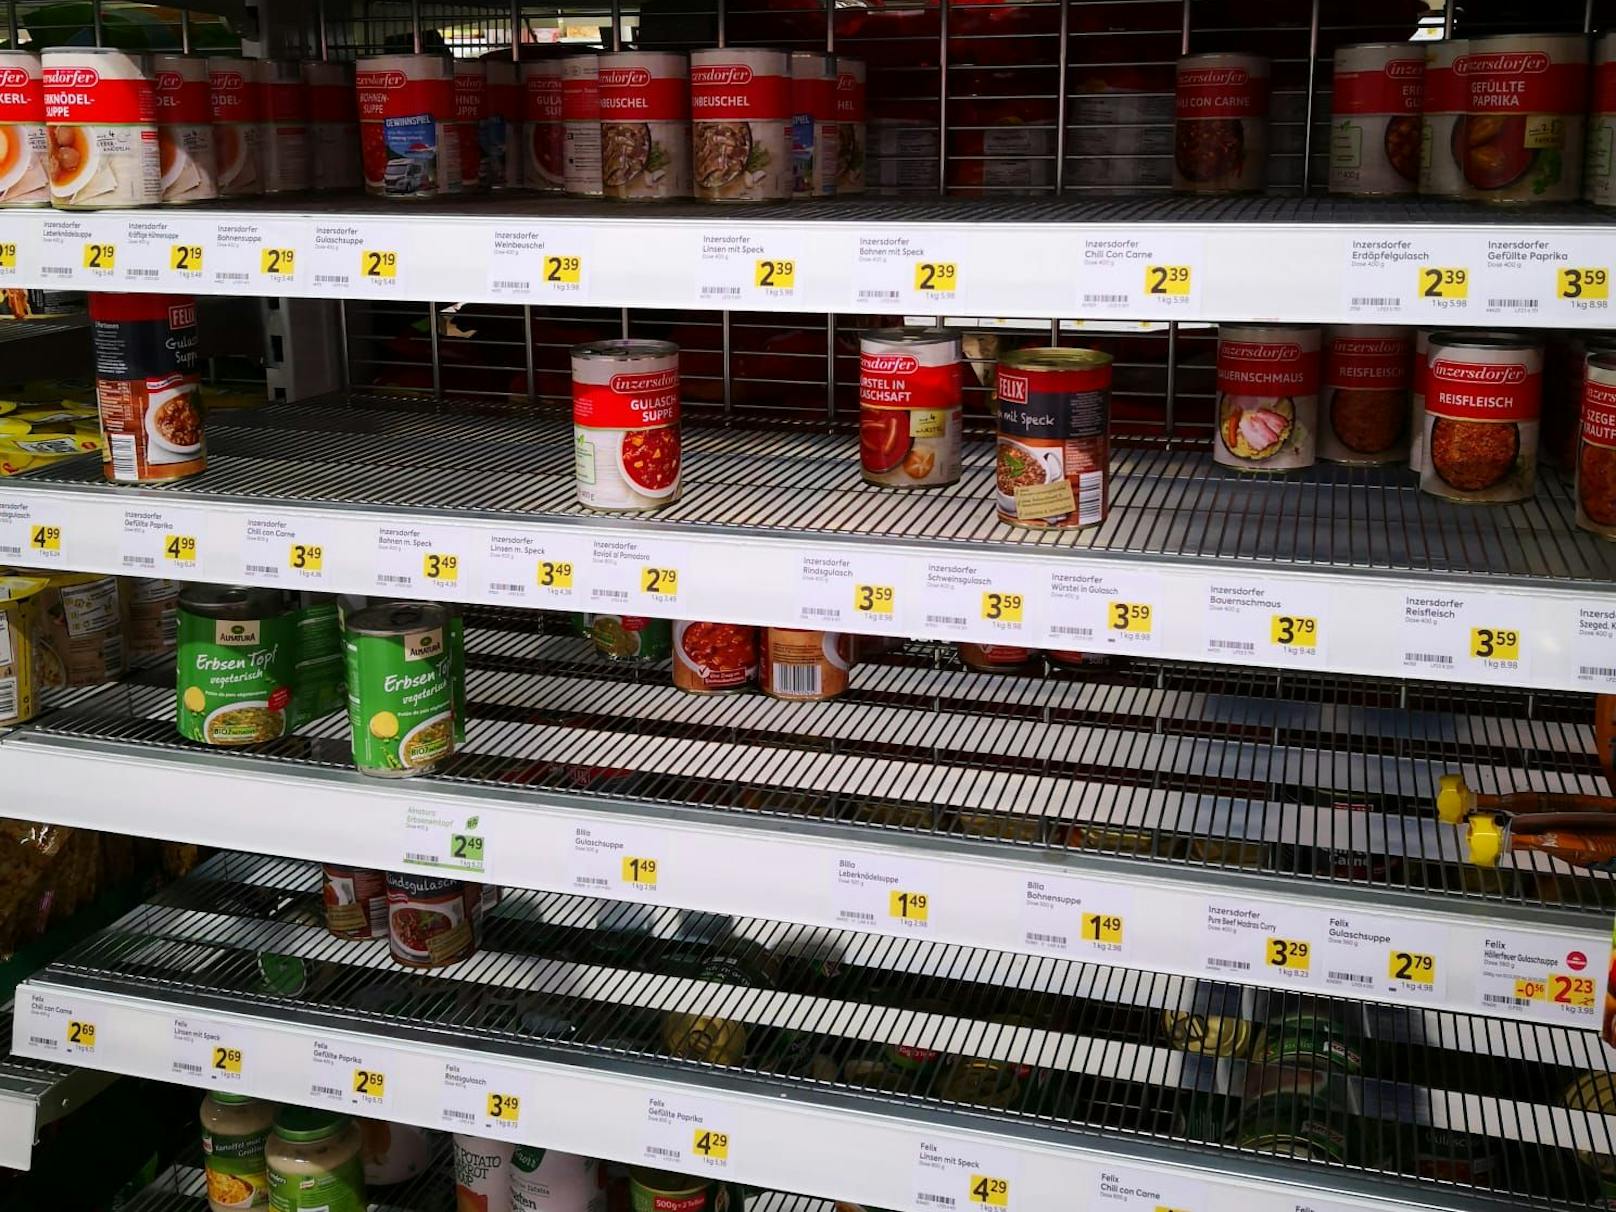 Halbleere Regale beim Krisen-Klassiker Dosen-Fertiggerichte in einem niederösterreichischen Supermarkt.